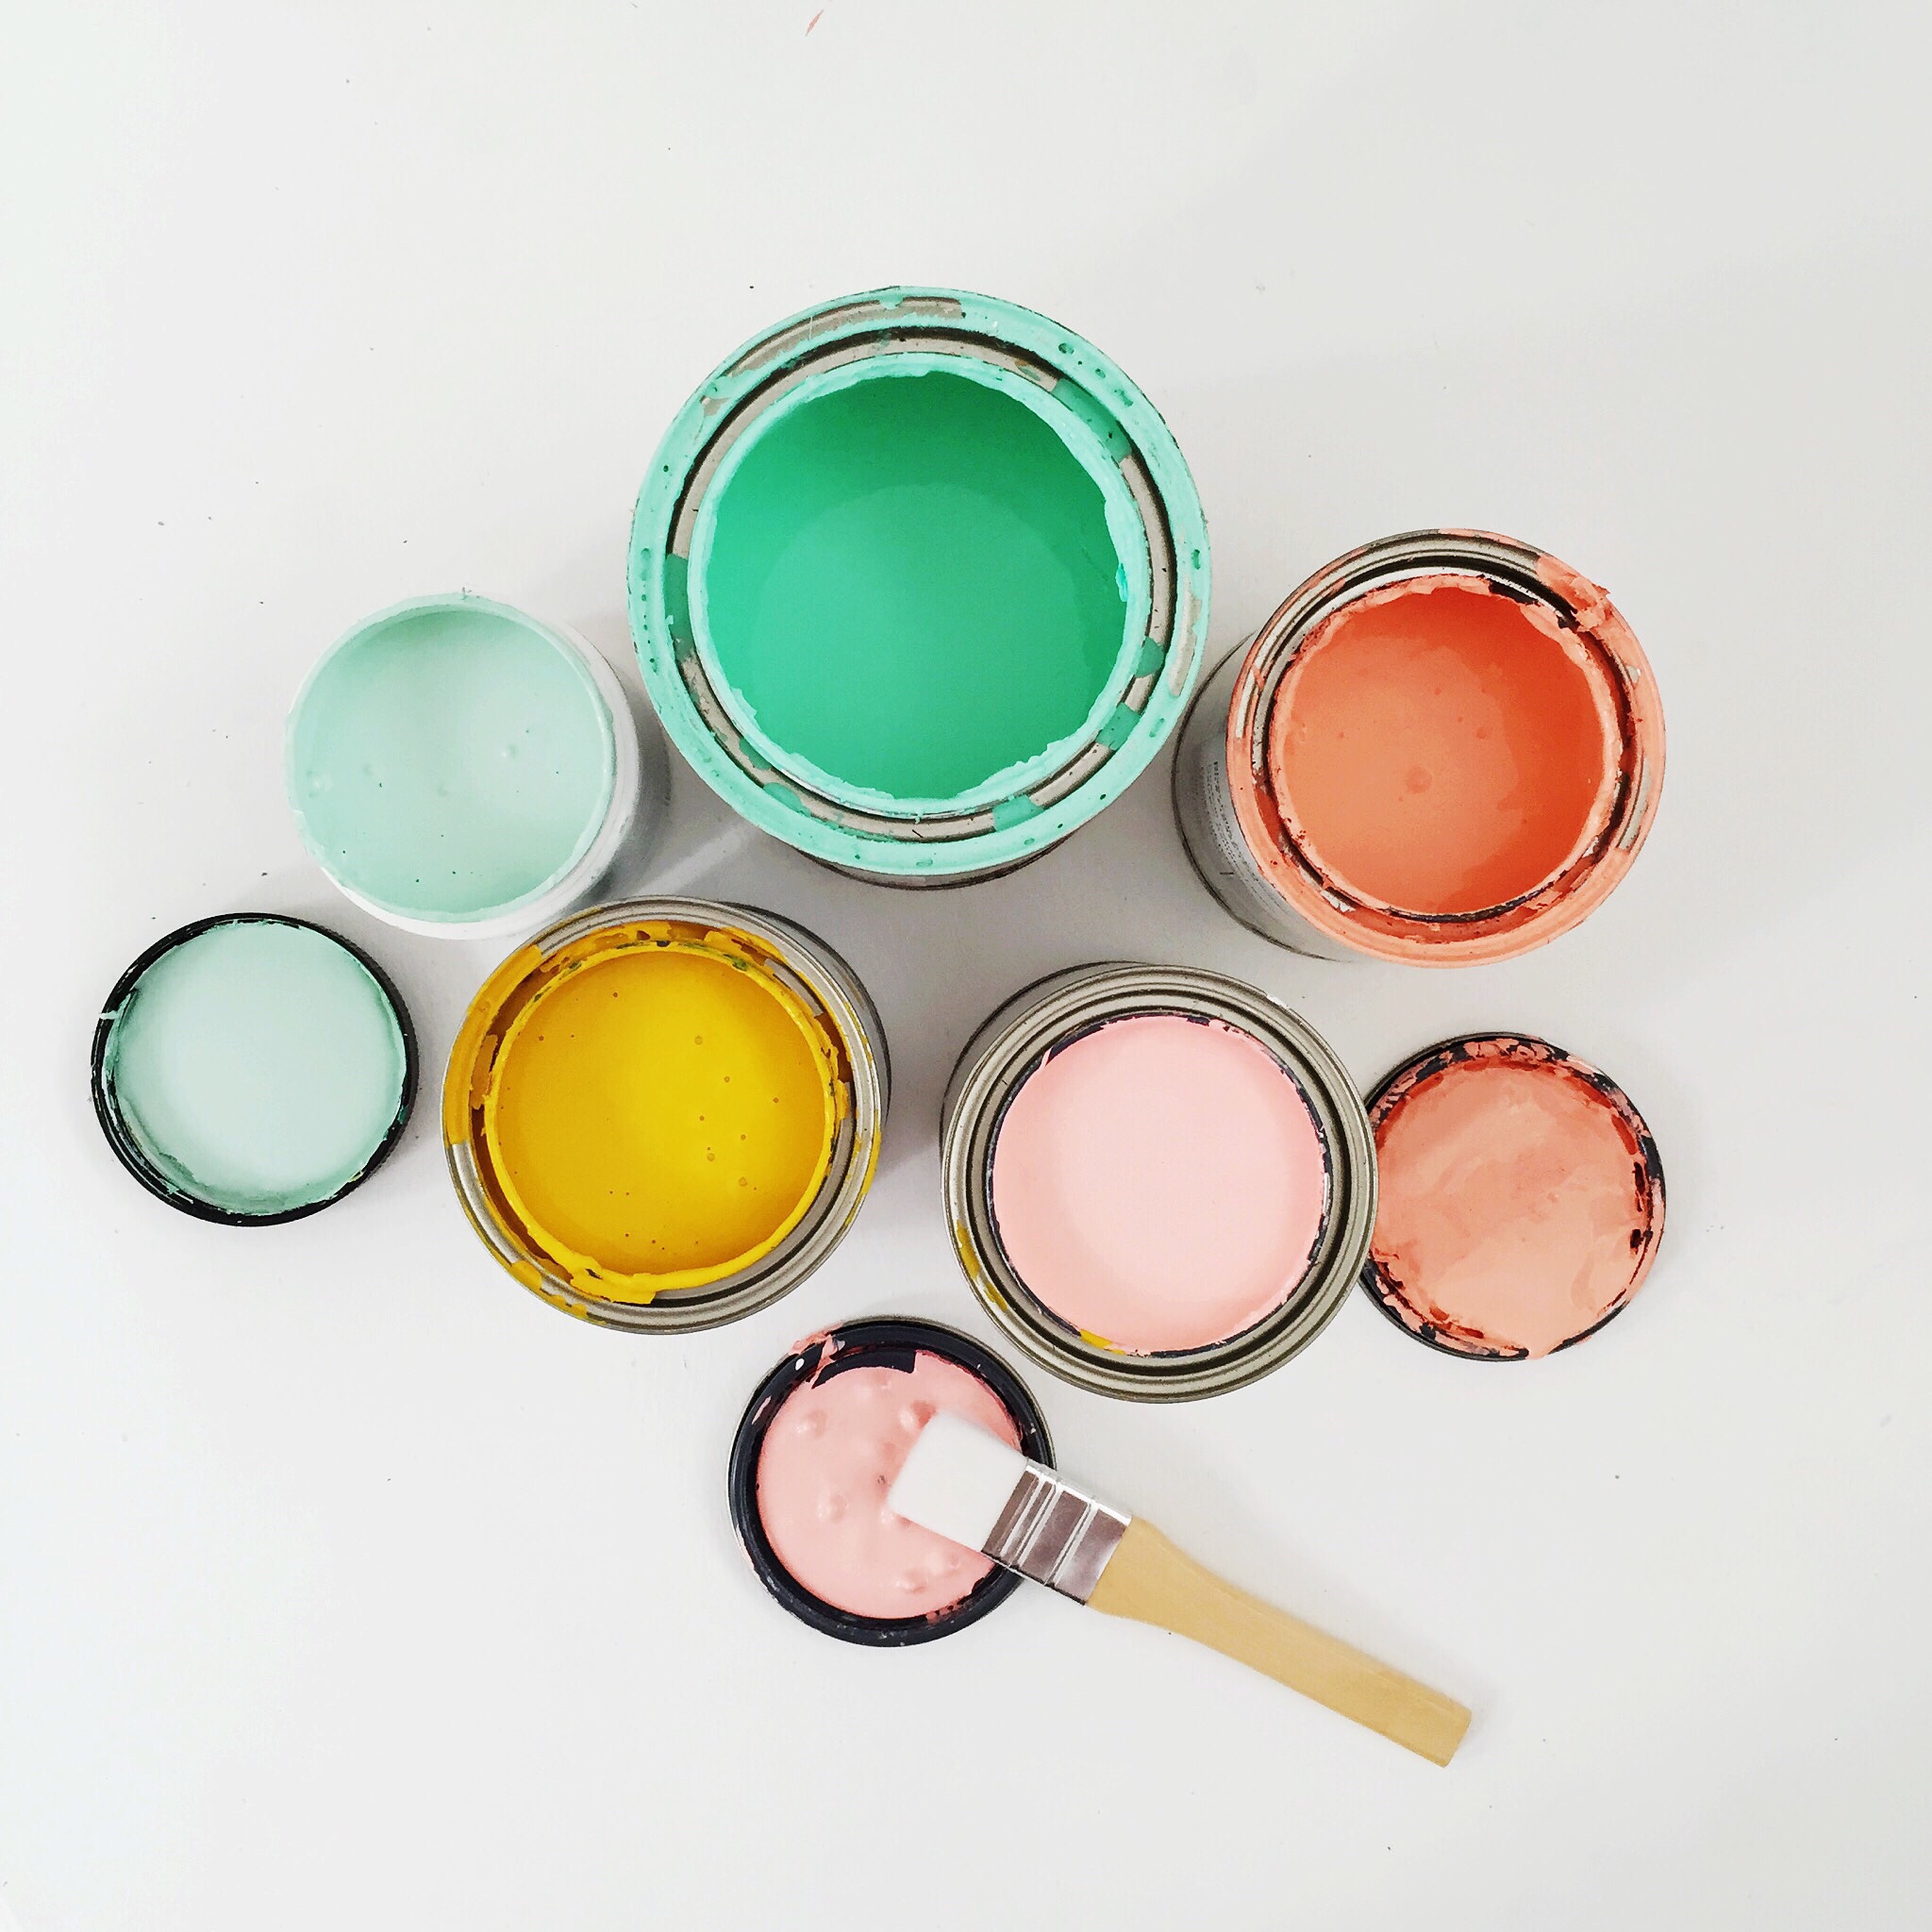 Auswahl an Farben gefüllt in Dosen zum streichen von Wänden